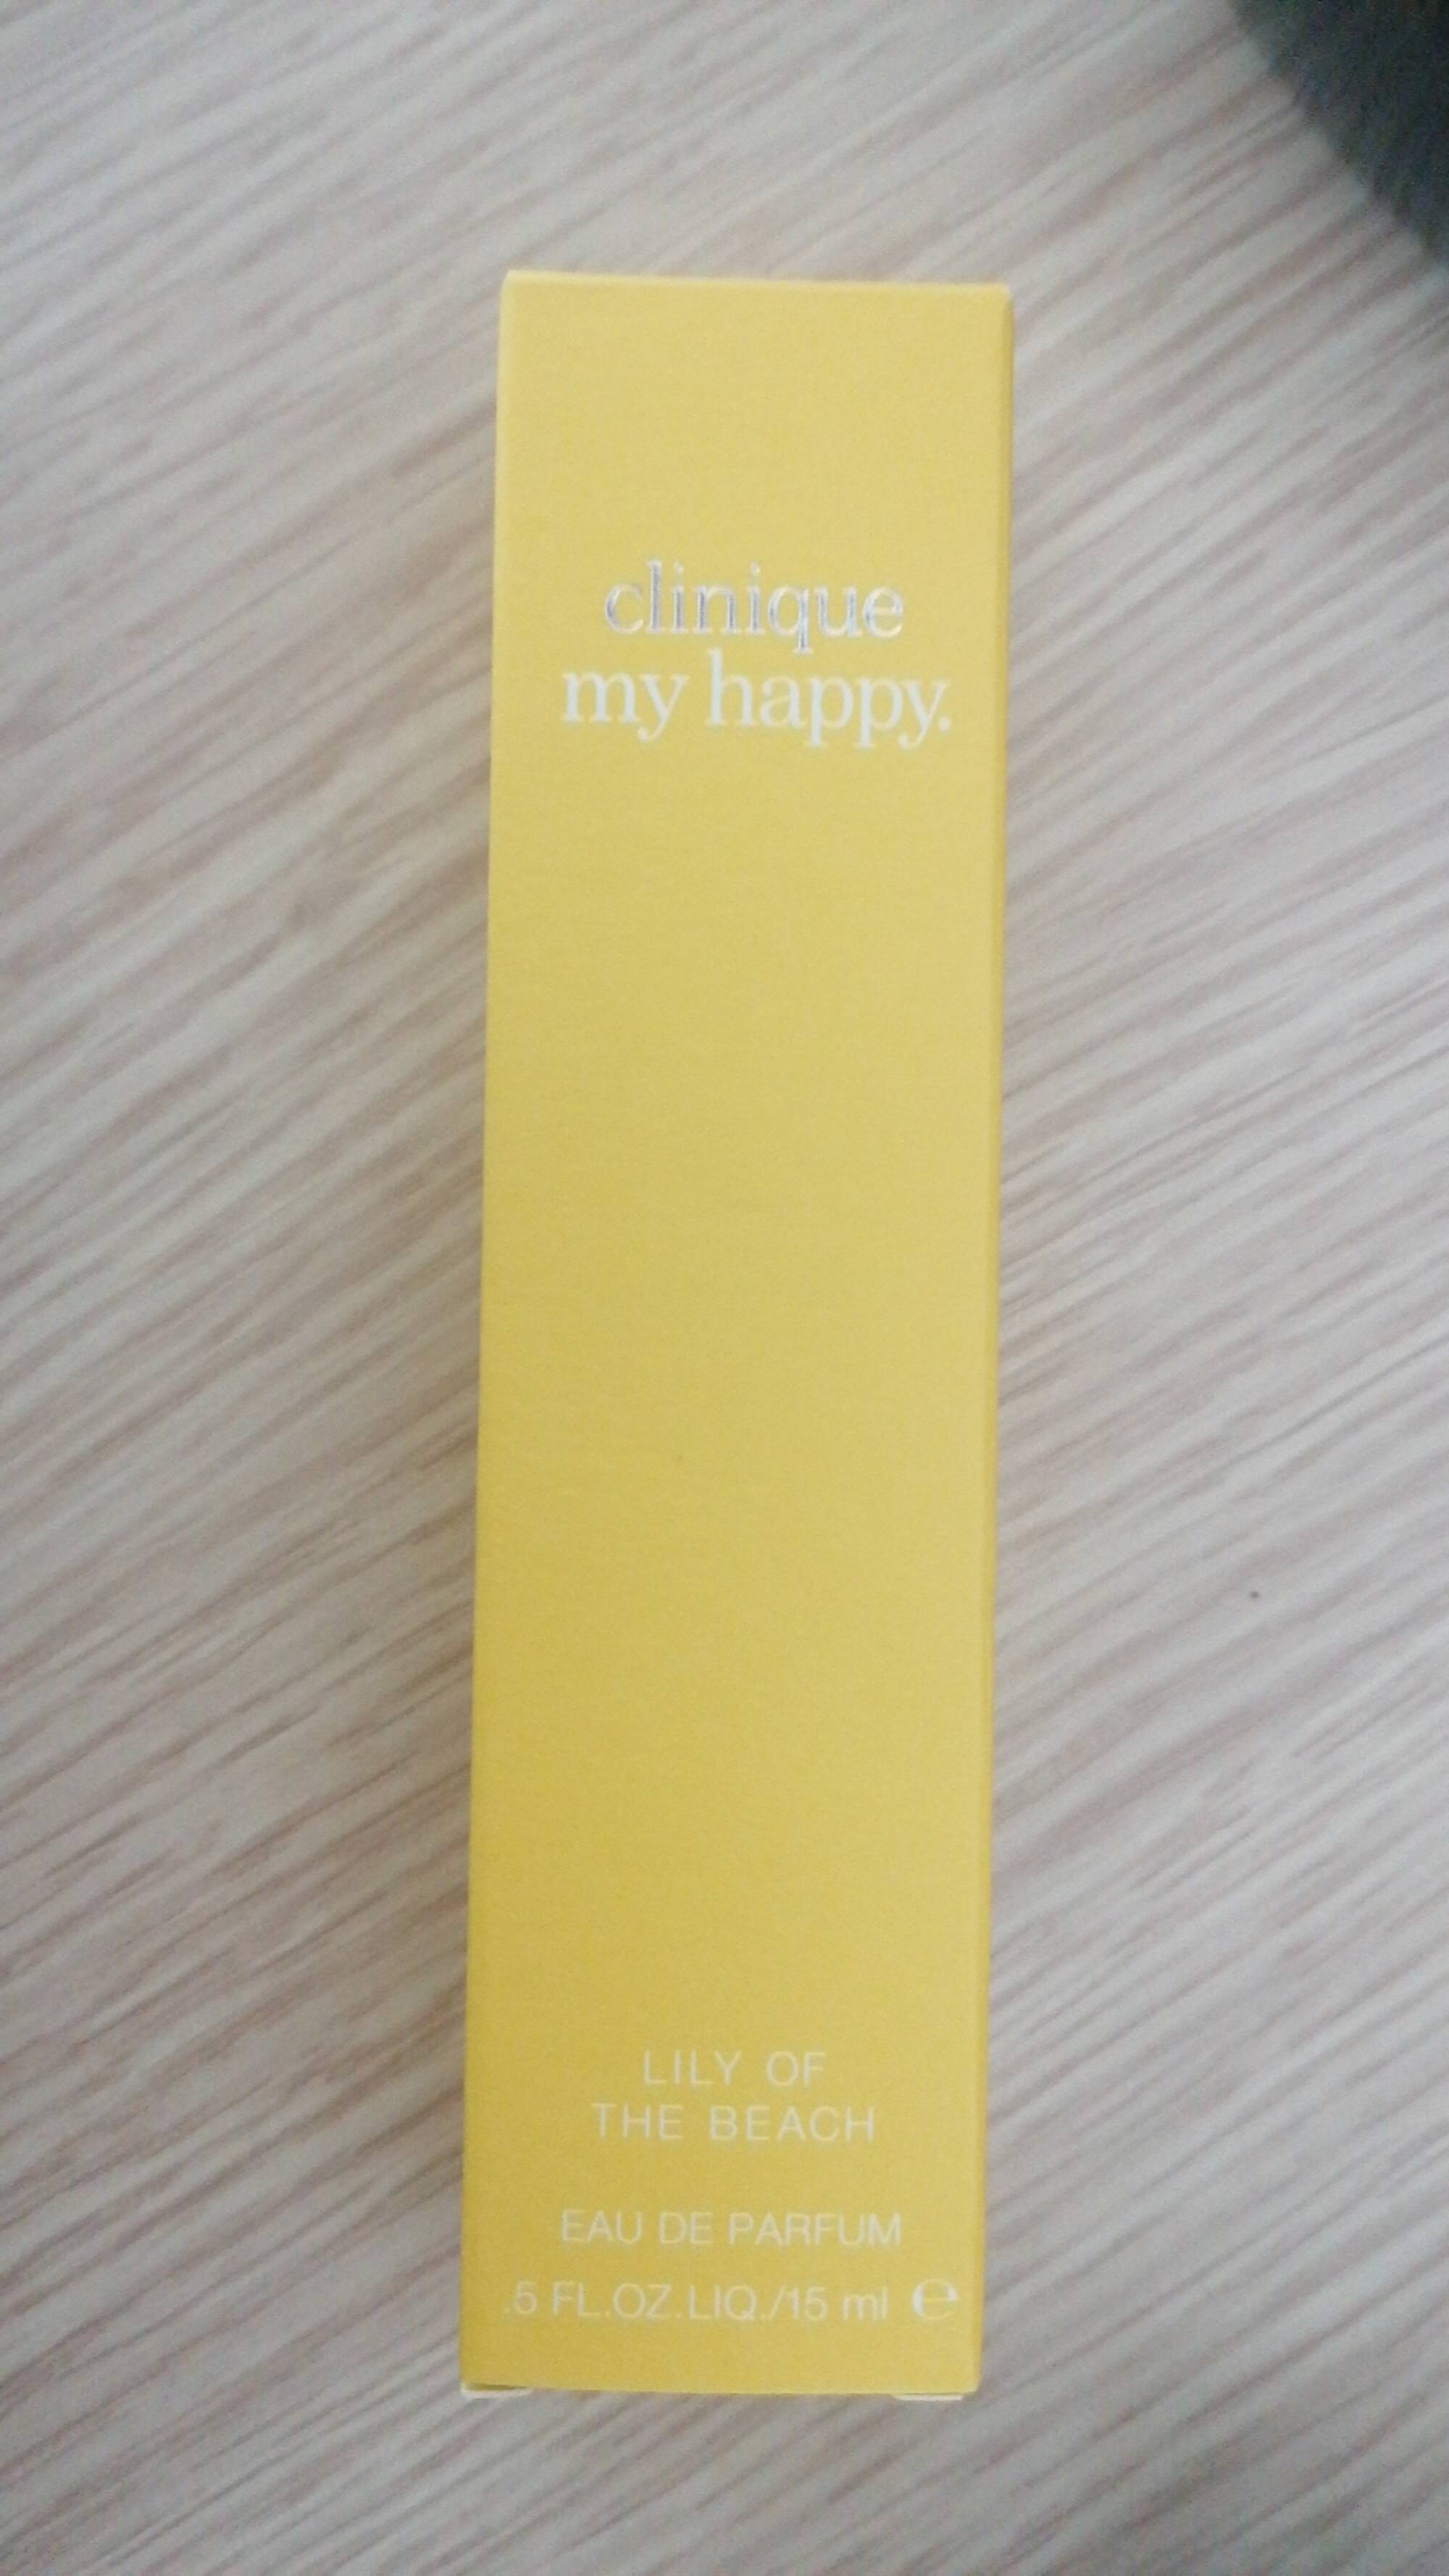 CLINIQUE - My happy - Eau de parfum